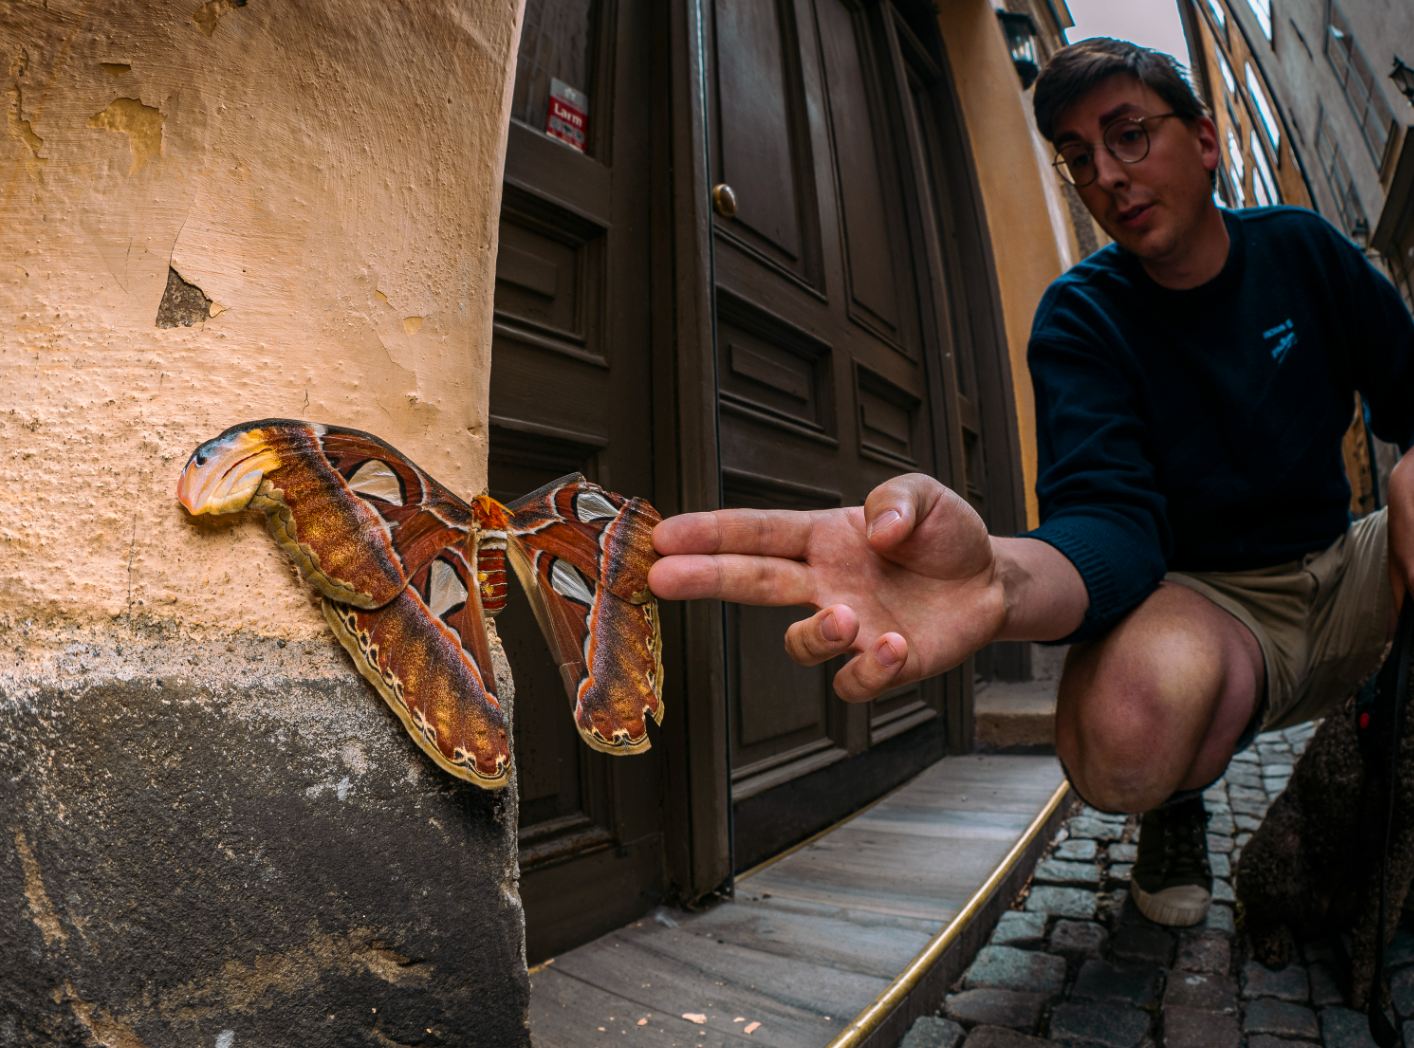 Atlasspinnaren satt och visade upp sina färgglada vingar på en husvägg i Gamla stan